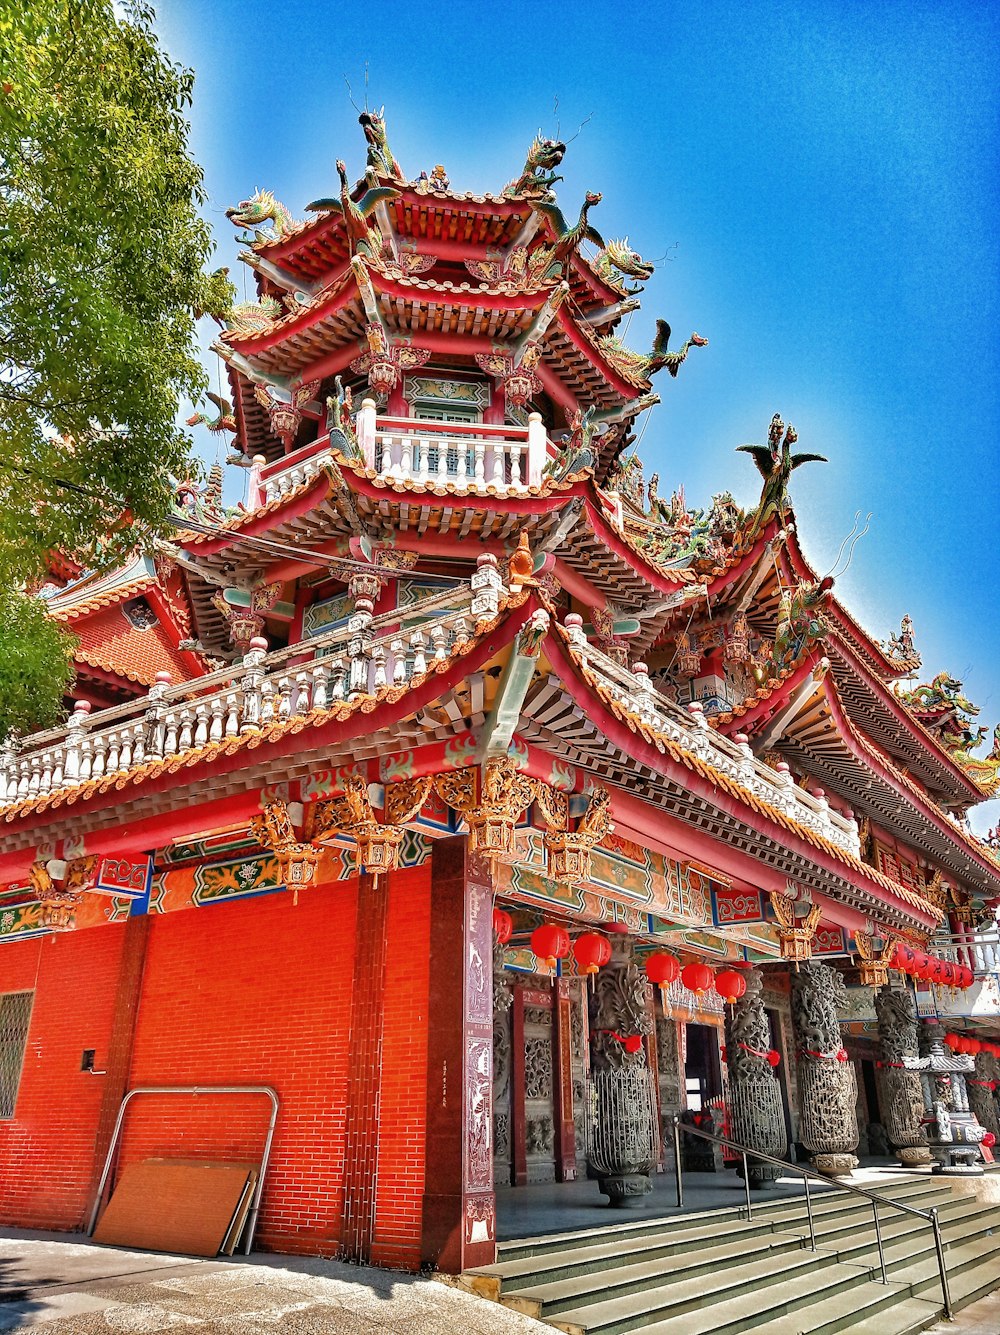 昼間の青空に映える紅白の寺院